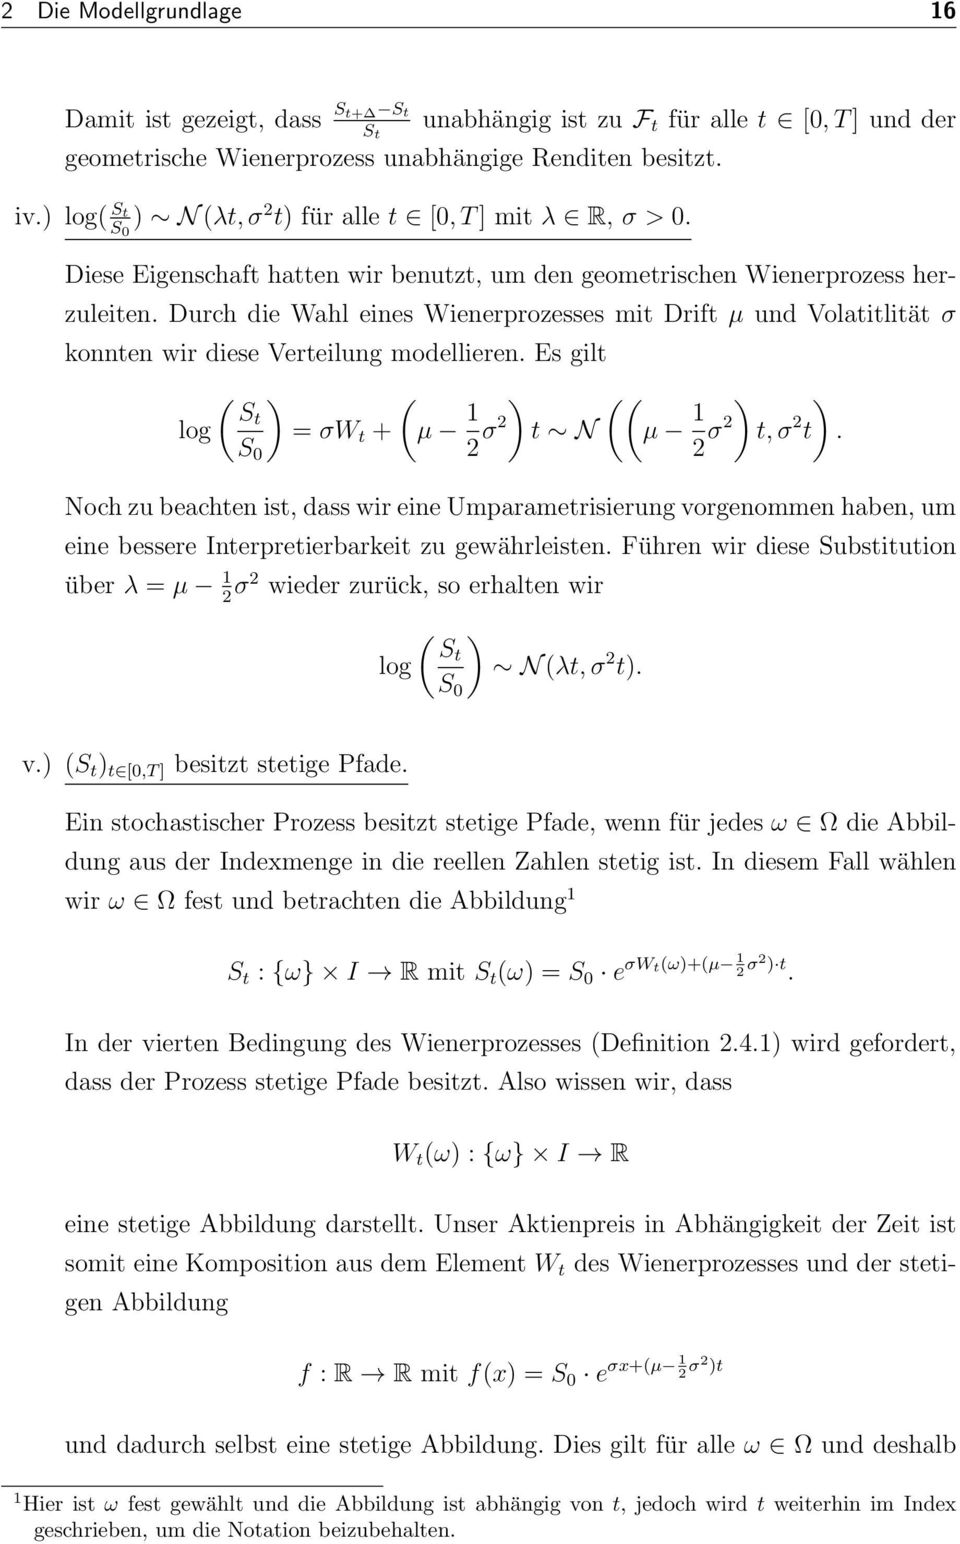 Durch die Wahl eines Wienerprozesses mit Drift µ und Volatitlität σ konnten wir diese Verteilung modellieren. Es gilt log ( St S 0 = σw t + (µ 1 σ t N ((µ 1 σ t, σ t.